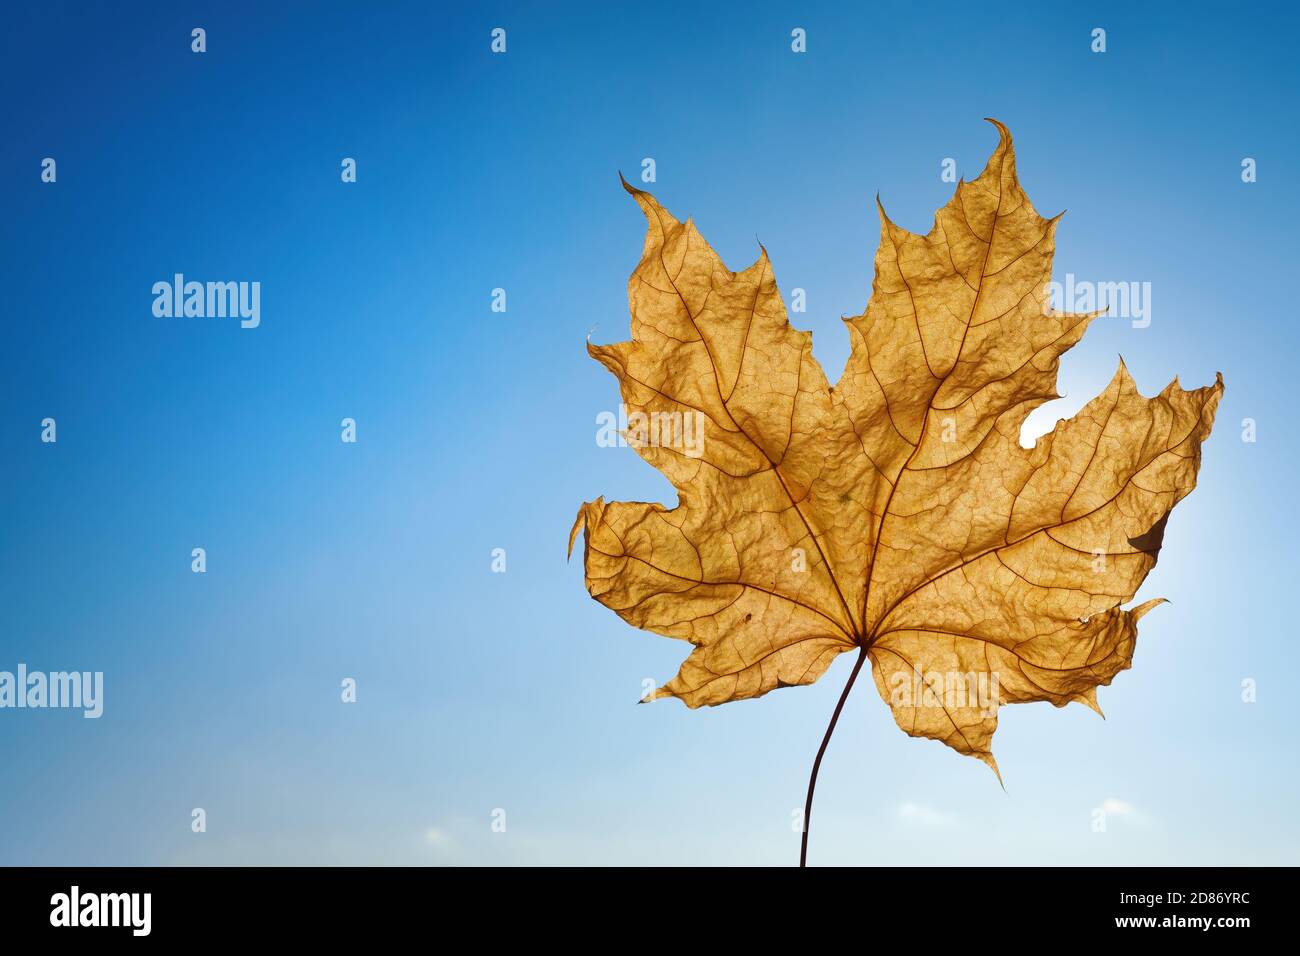 Maple leaf against blue sunny sky. Copy space, autumn mood Stock Photo